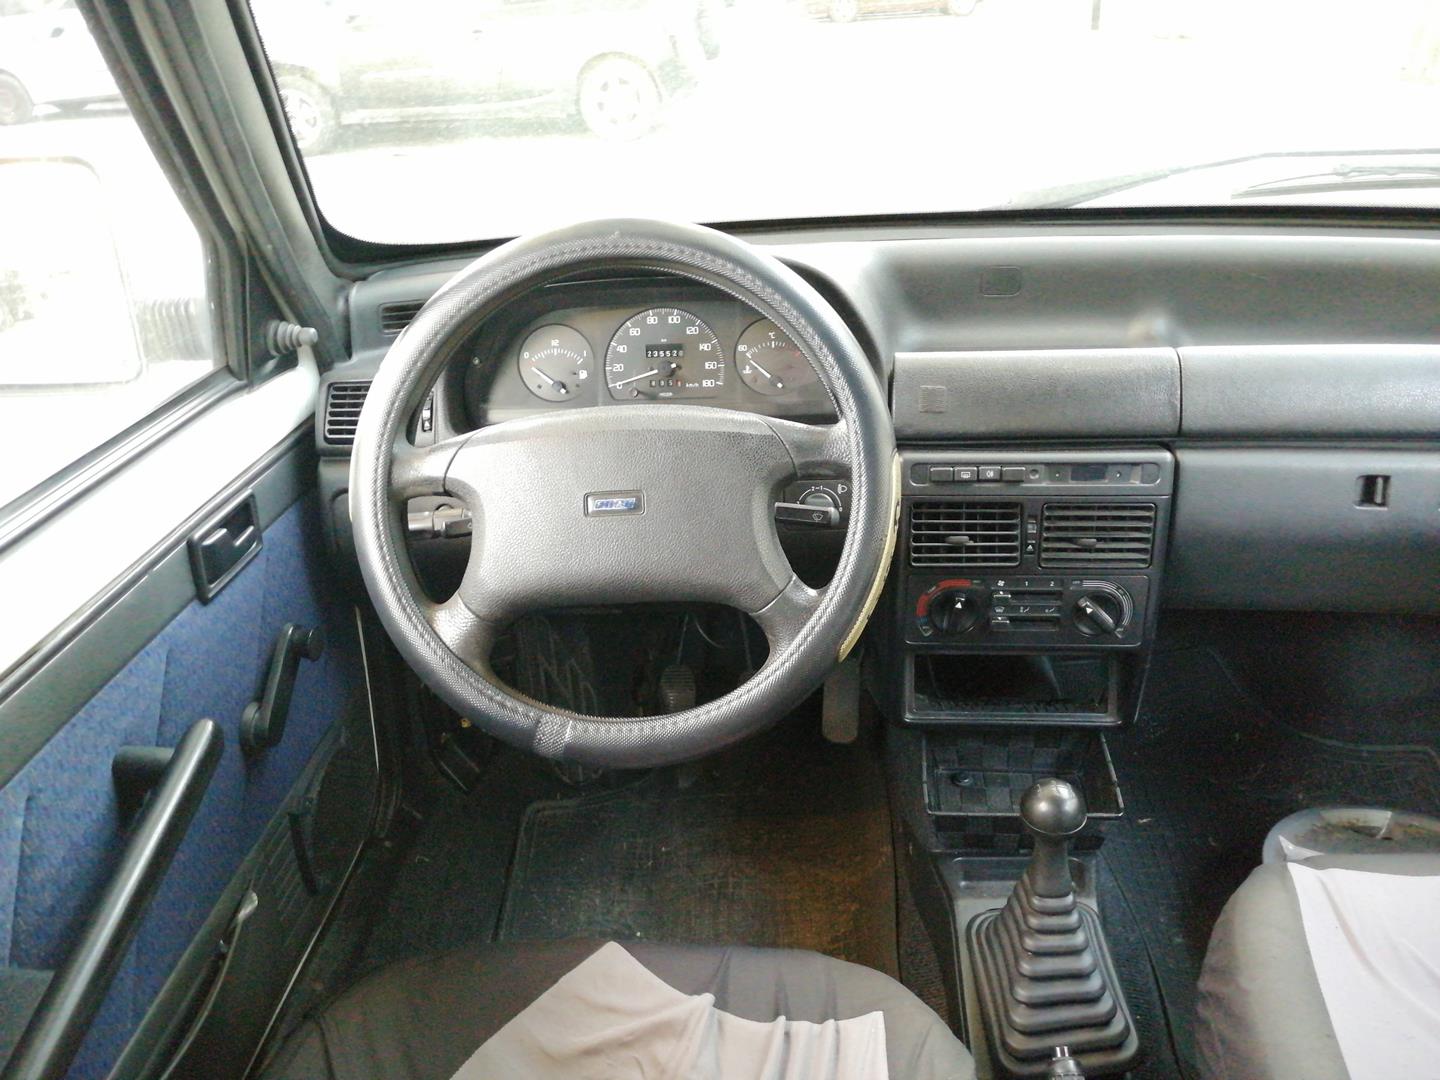 FIAT S40 2 generation (2004-2012) Front Left Door 50010373, BLANCA, 4PUERTAS 19760186